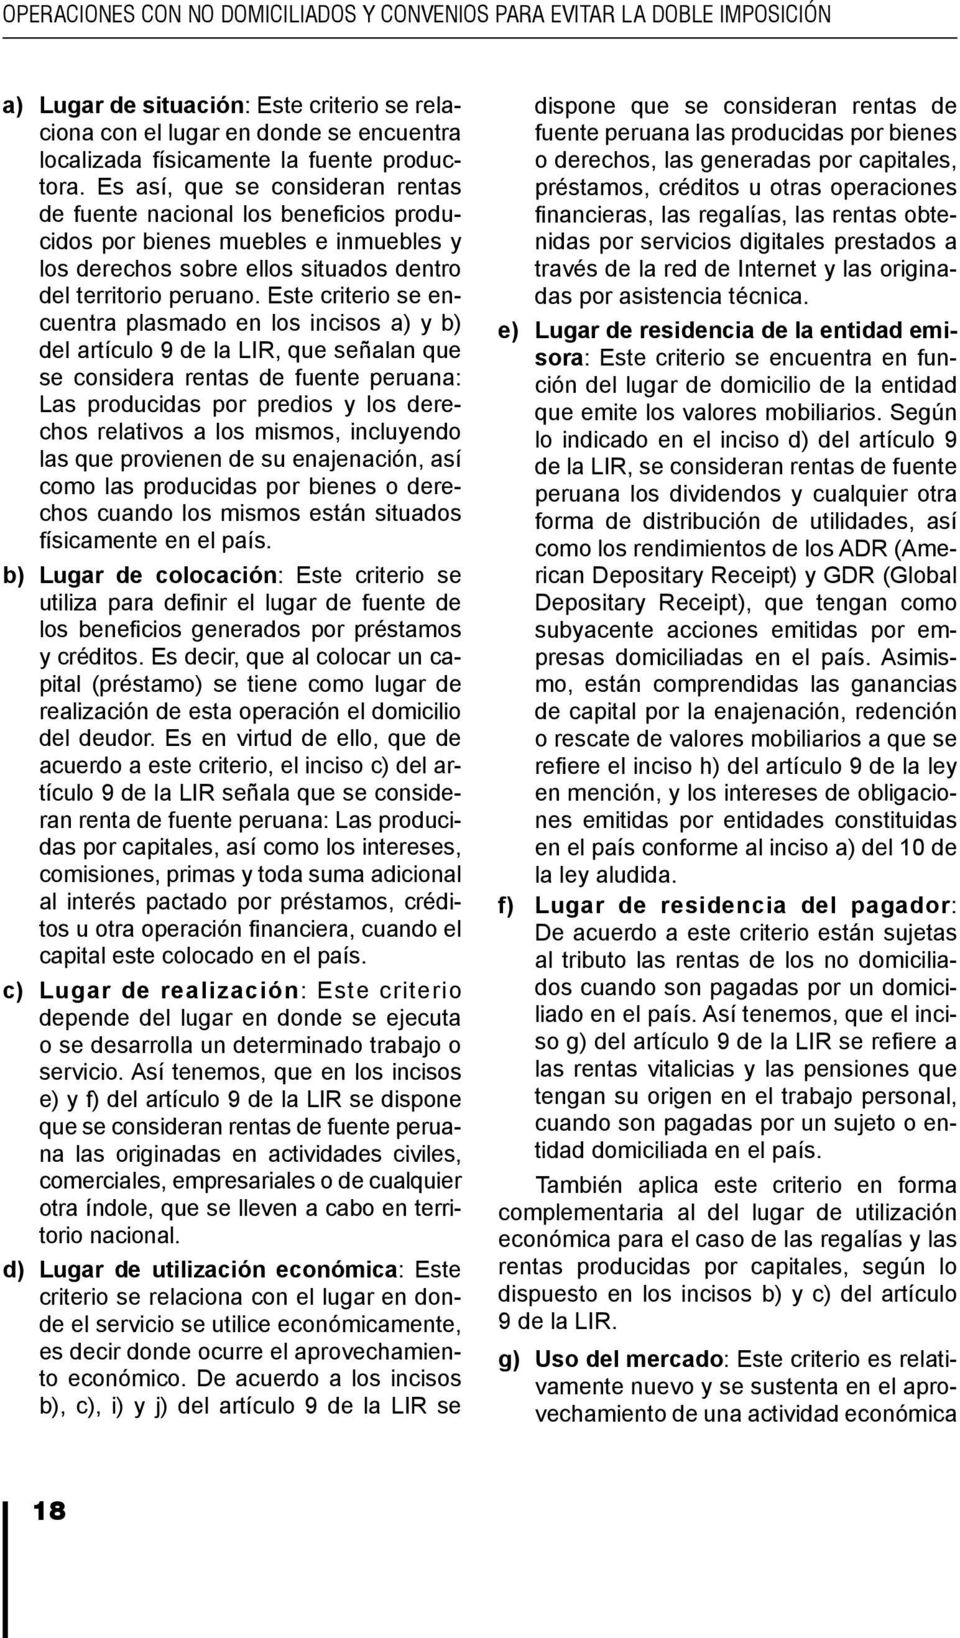 Este criterio se encuentra plasmado en los incisos a) y b) del artículo 9 de la LIR, que señalan que se considera rentas de fuente peruana: Las producidas por predios y los derechos relativos a los